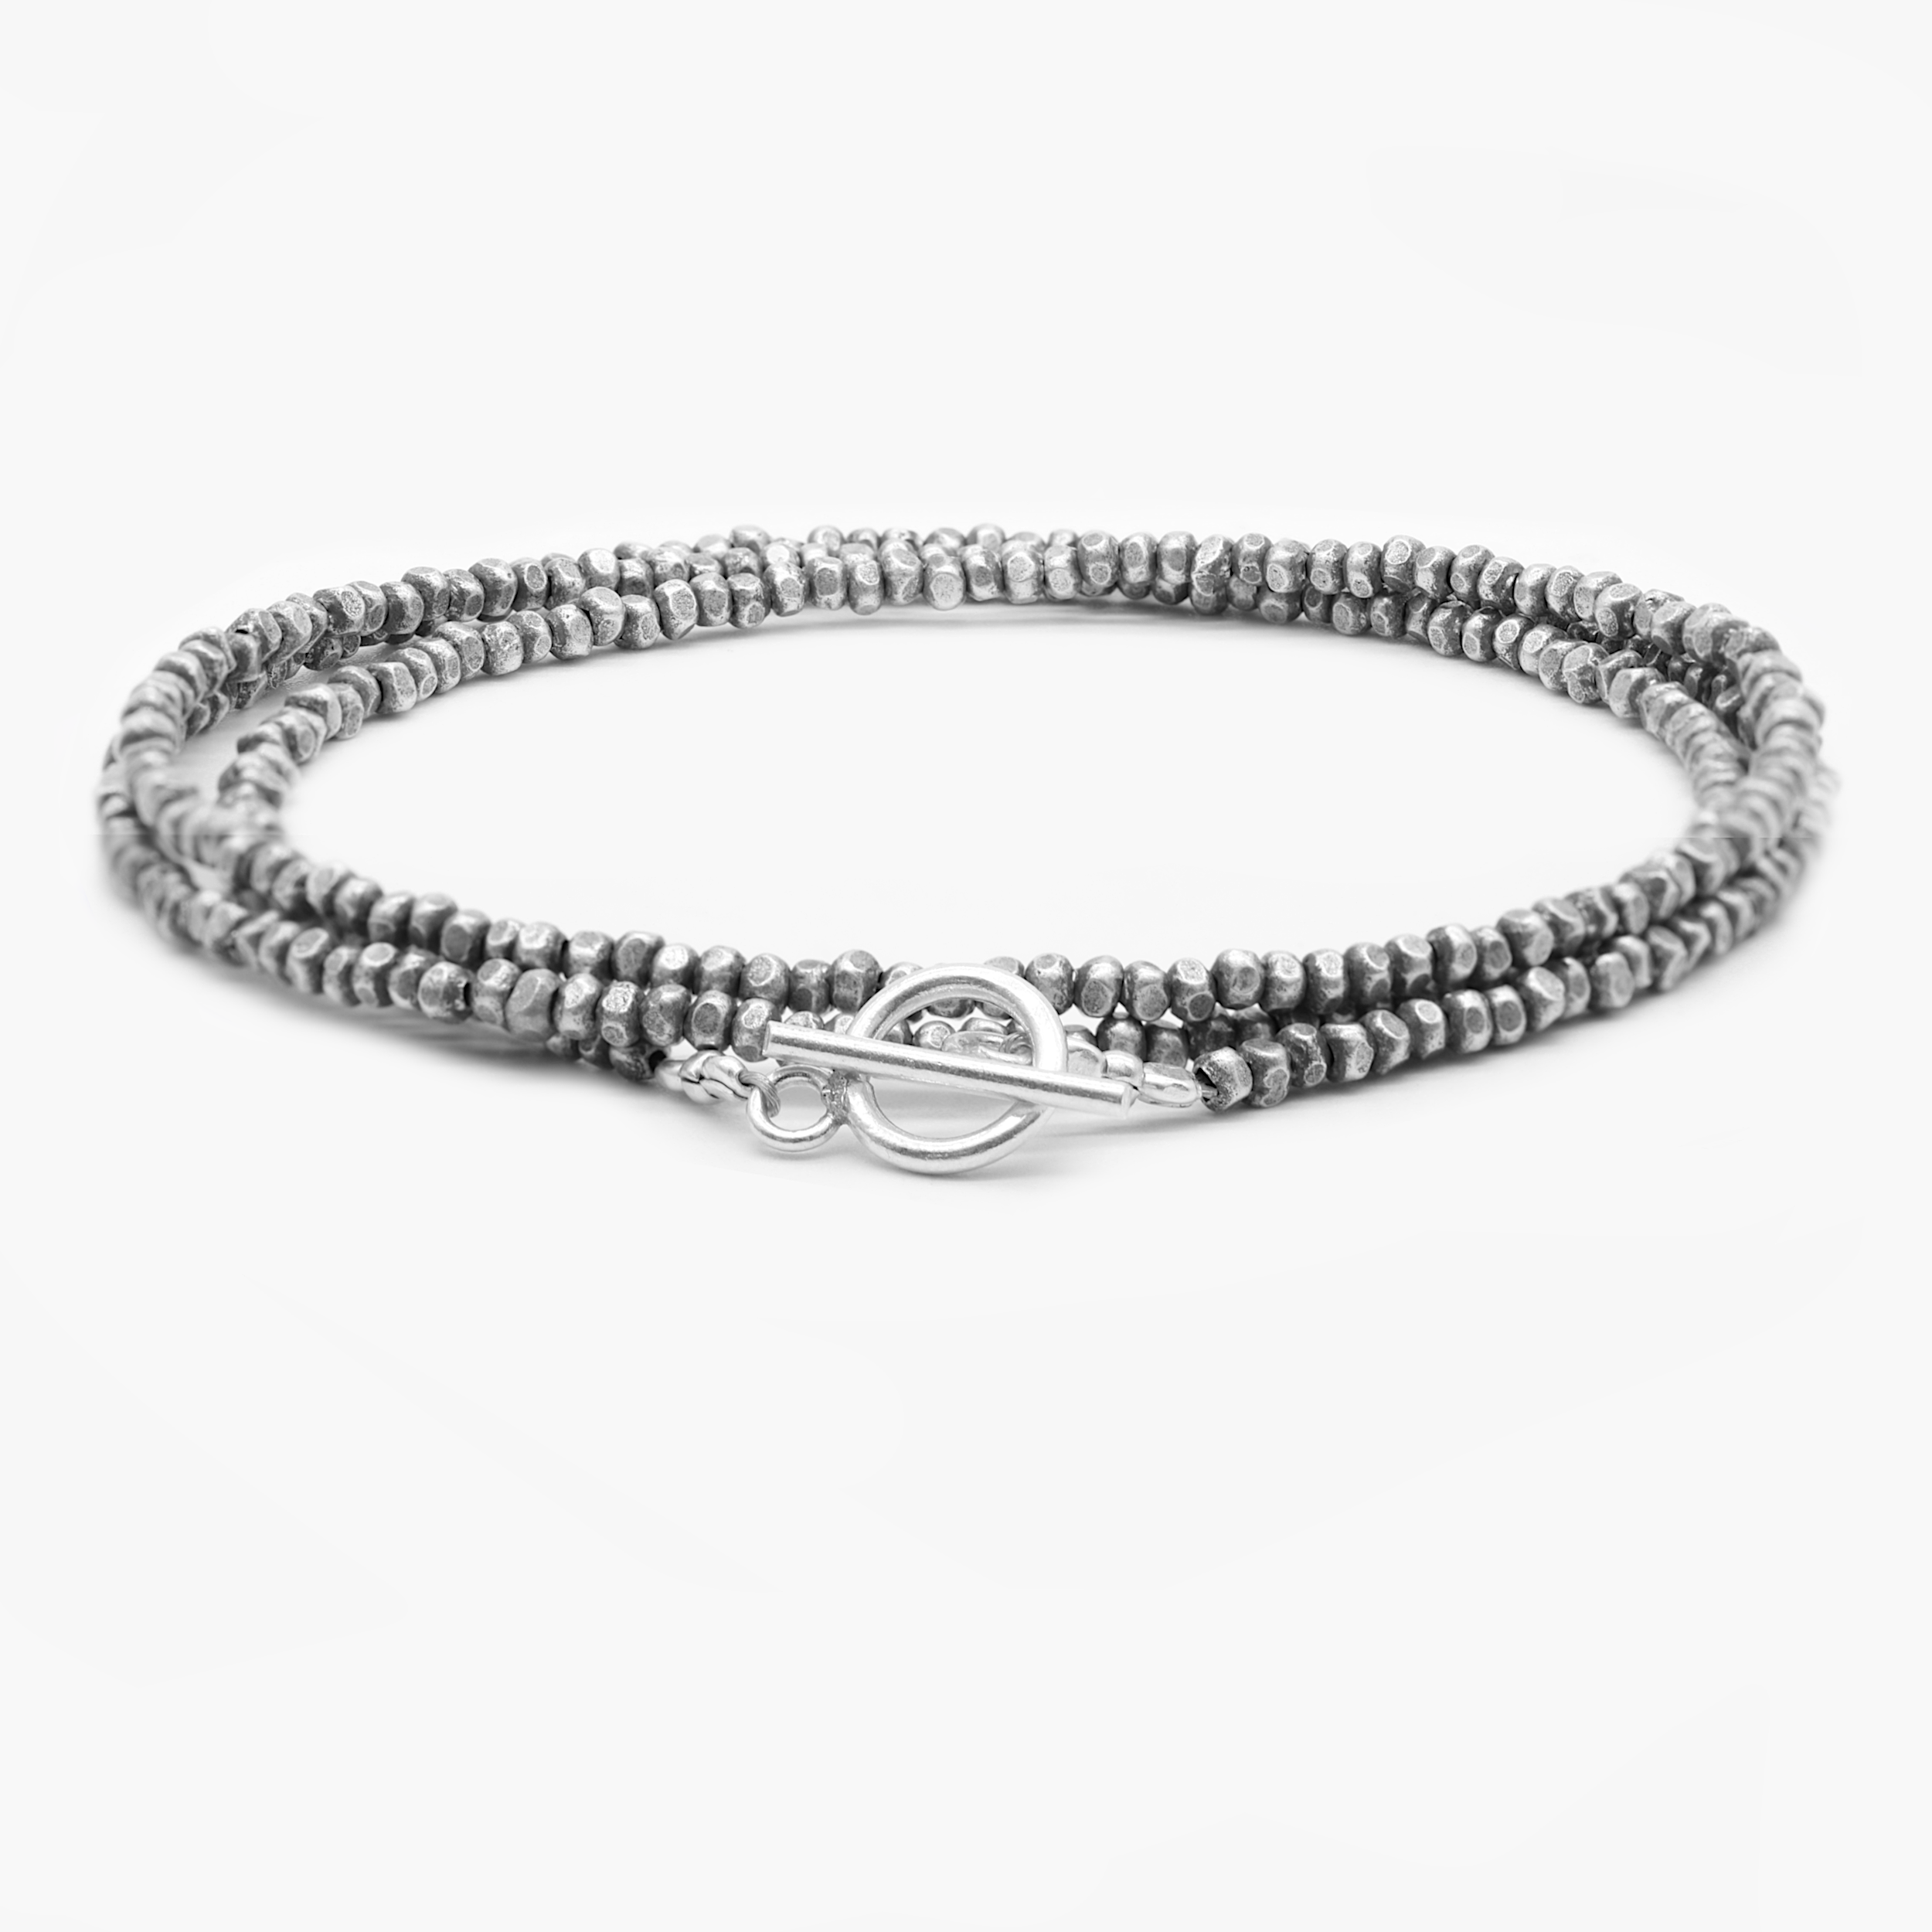 3 Laps Bracelet With Hand-Forged Silver Beads-Bracelet-Kompsós